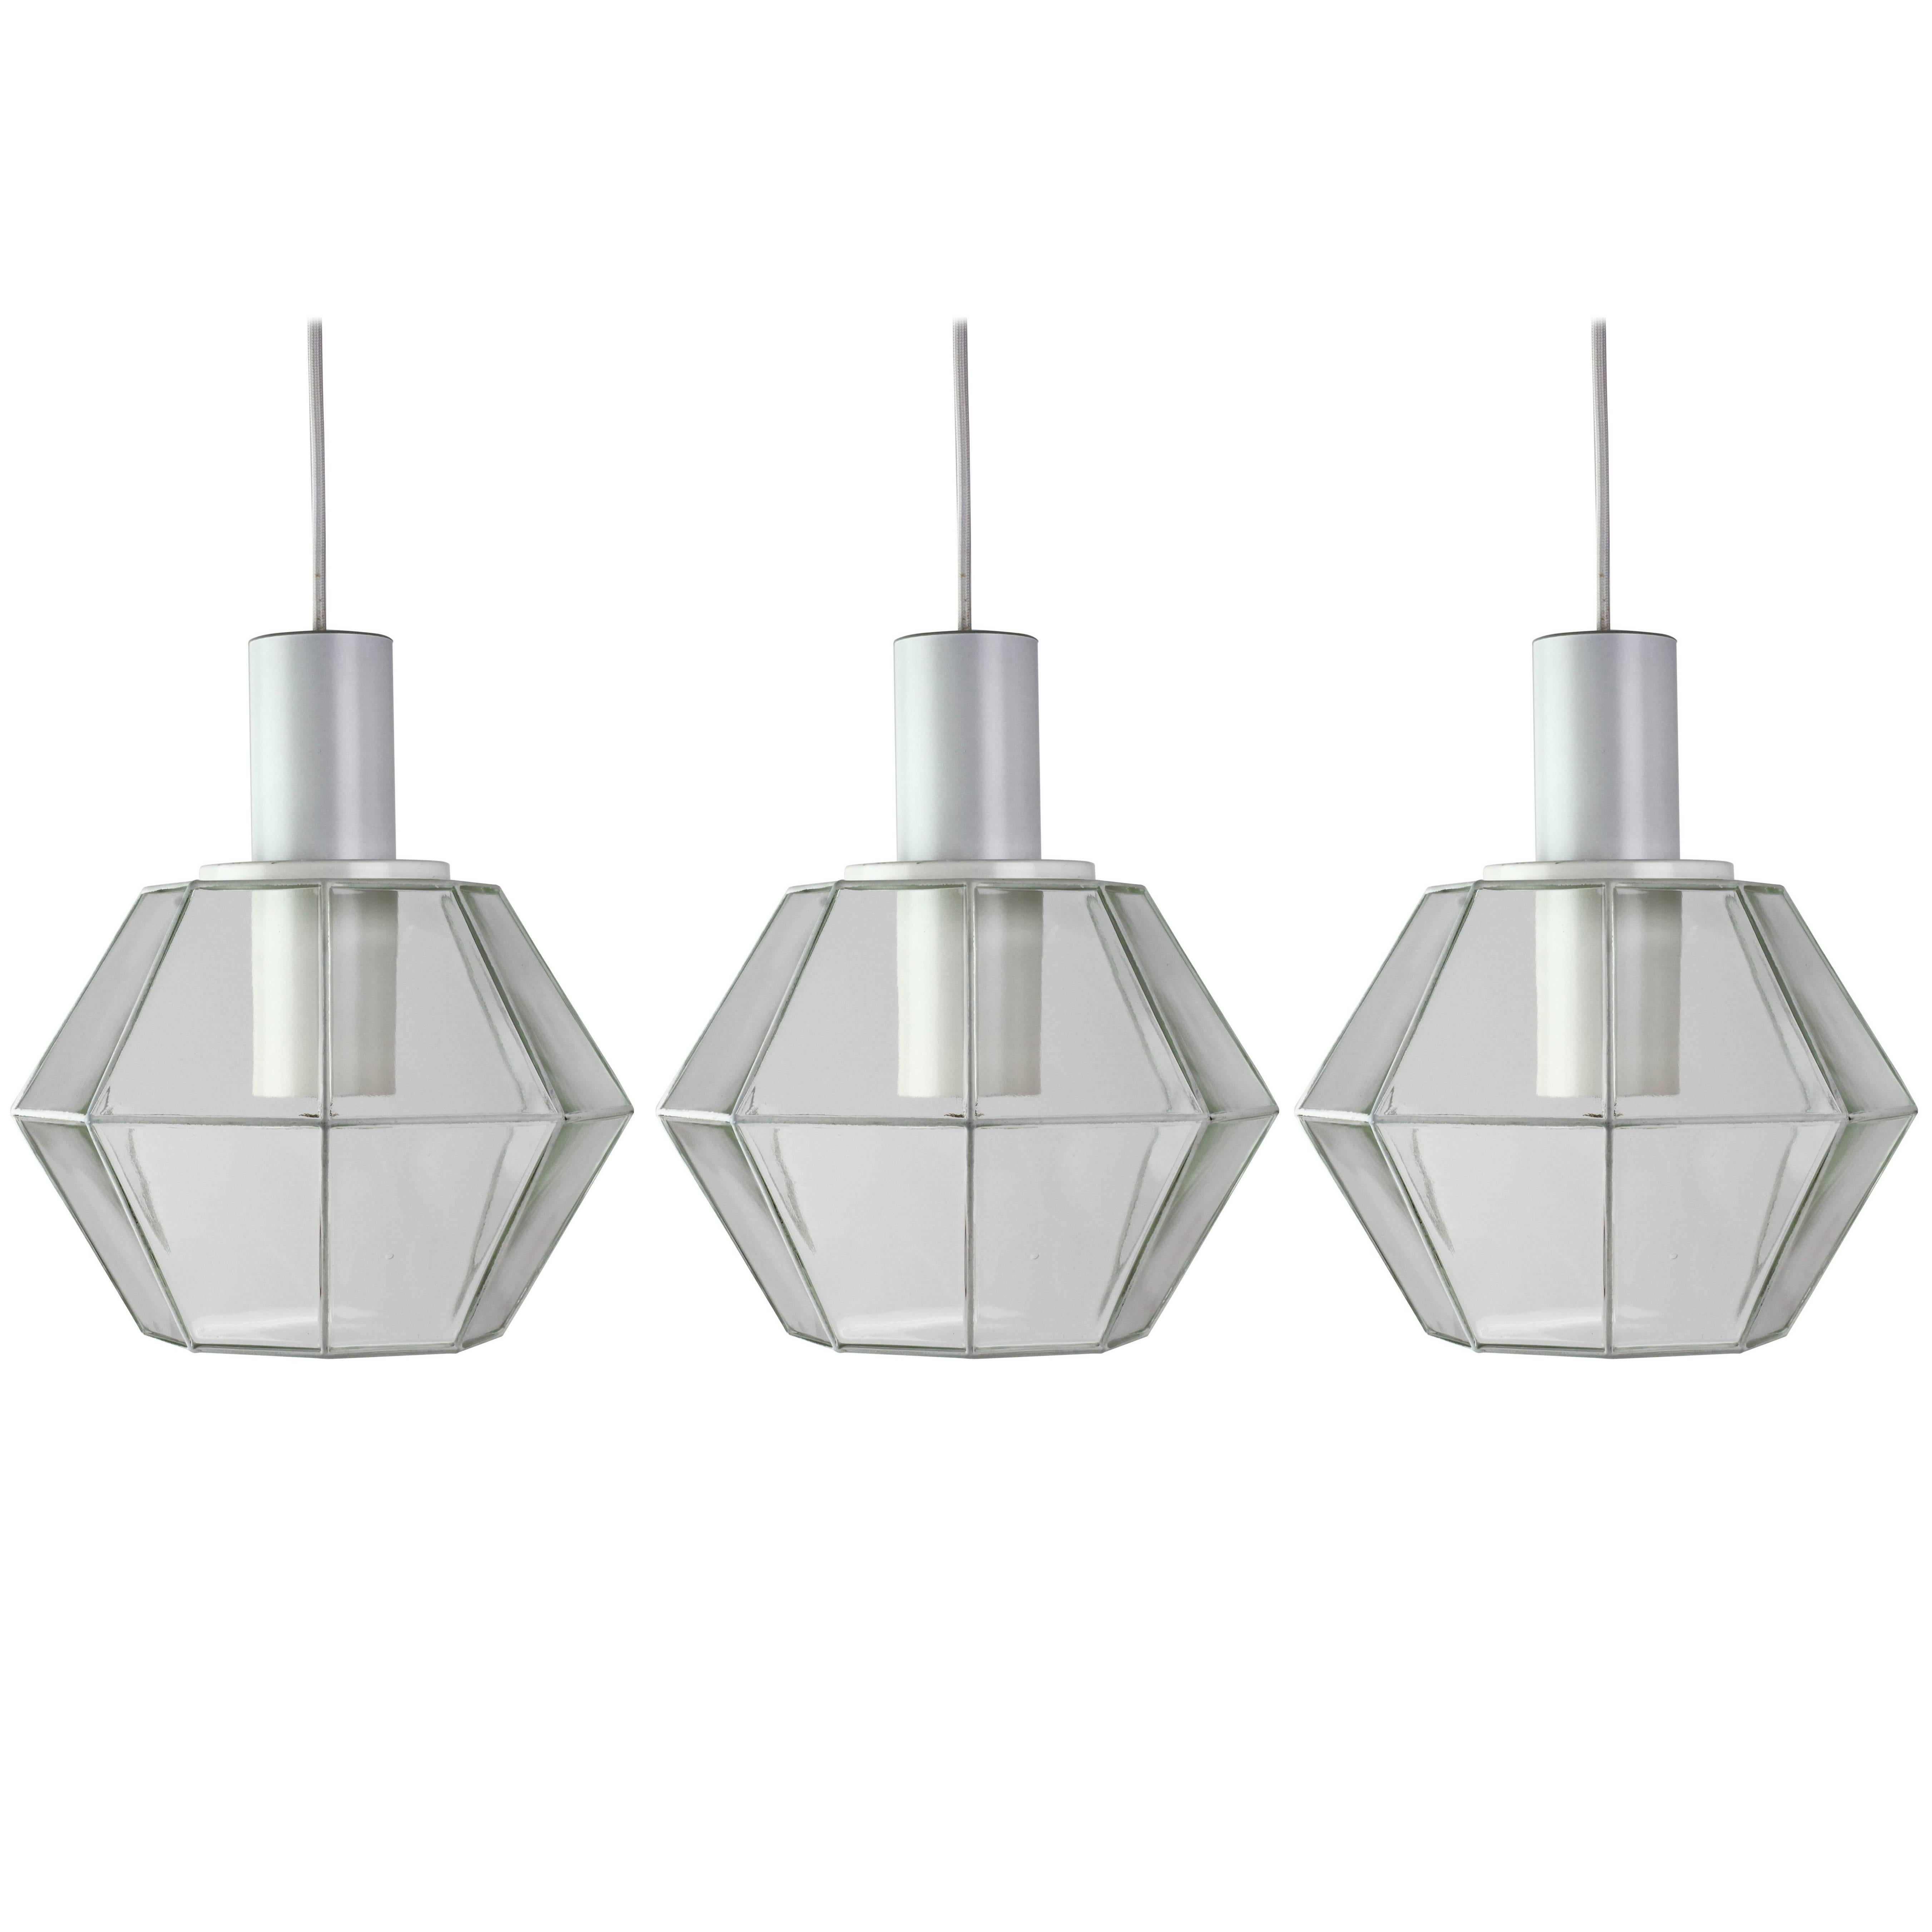 Glashütte Limburg Geometric Pendant Lights / Lamps White & Clear Glass 1970s